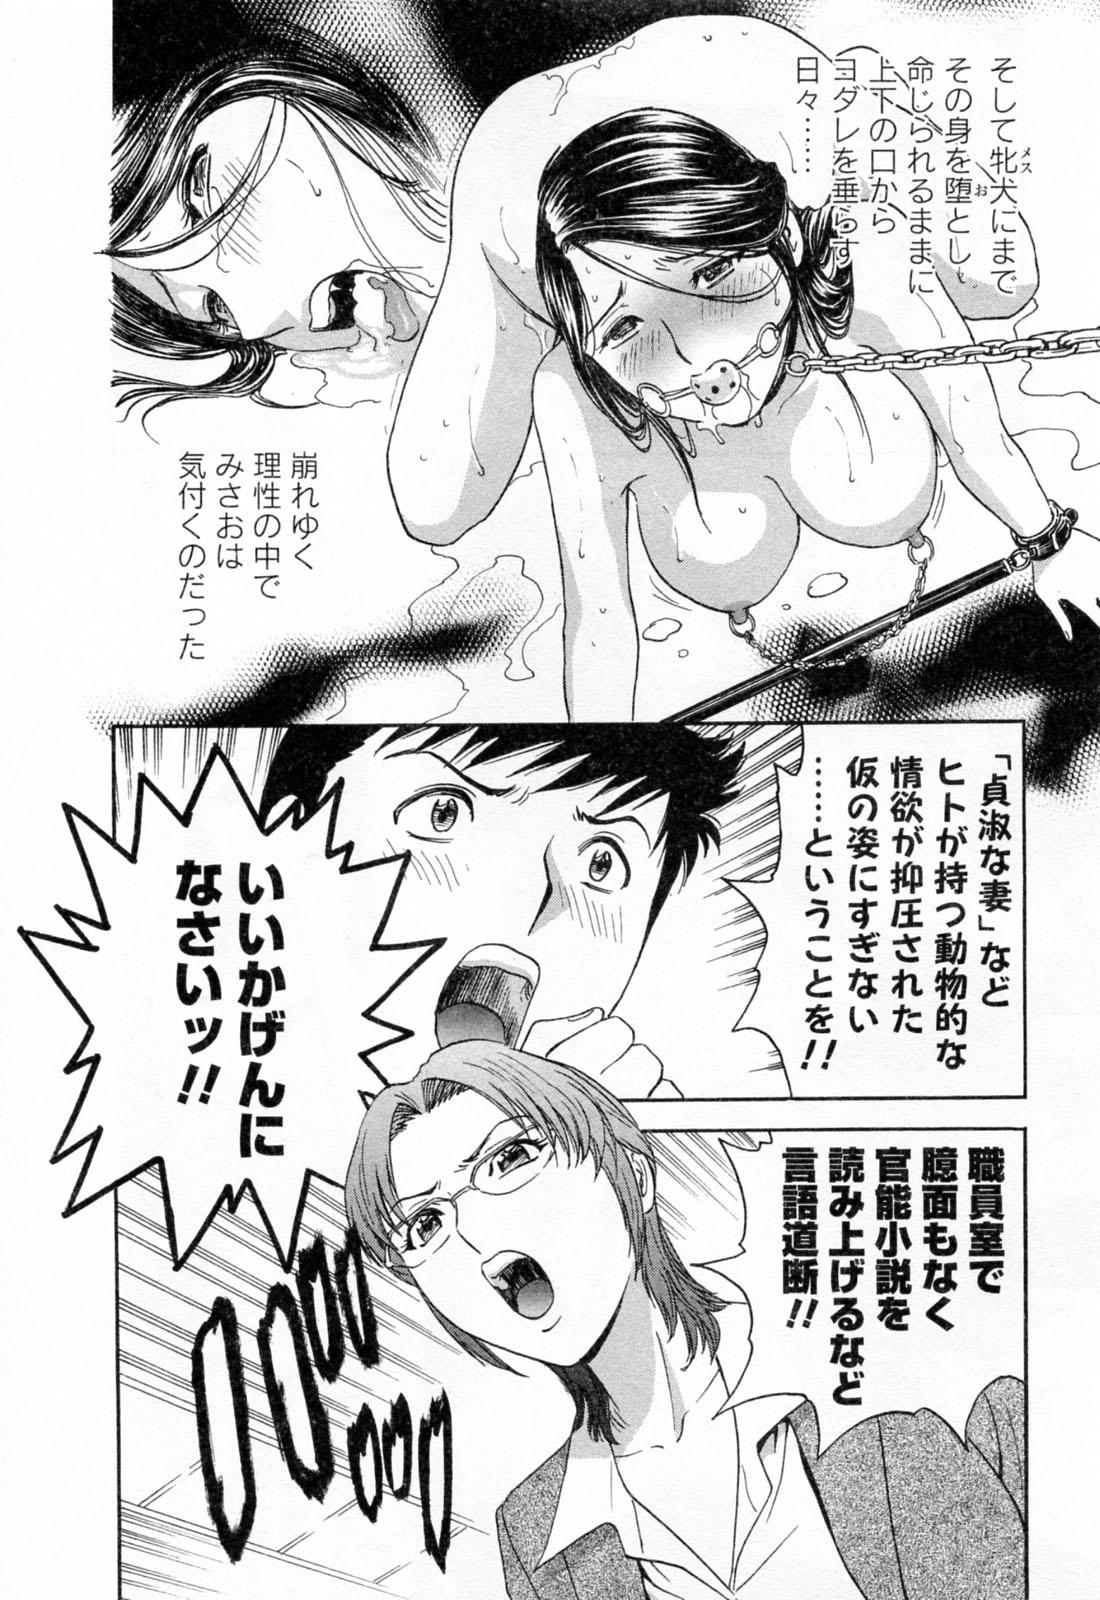 [Hidemaru] Mo-Retsu! Boin Sensei (Boing Boing Teacher) Vol.4 13